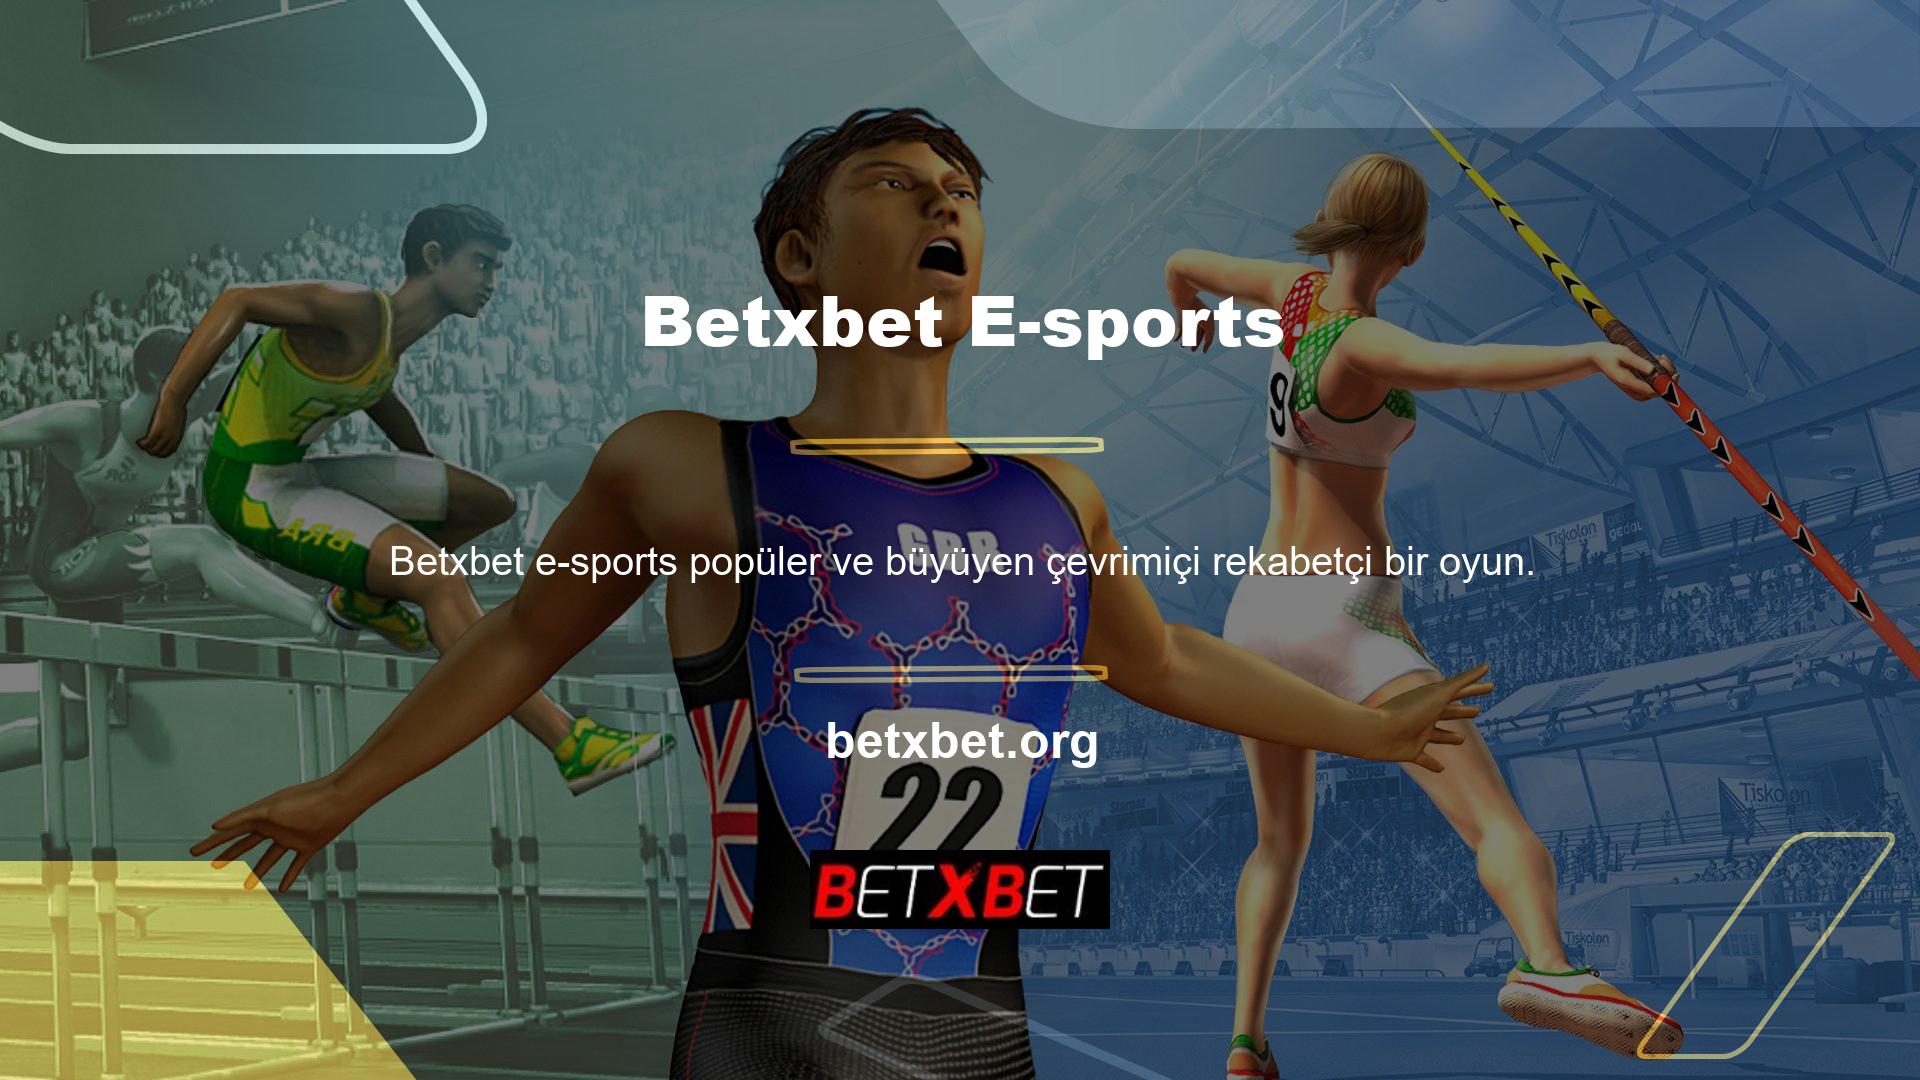 Artık hem Betxbet maçlarına hem de resmi maçlara bahis oynayabilirsiniz